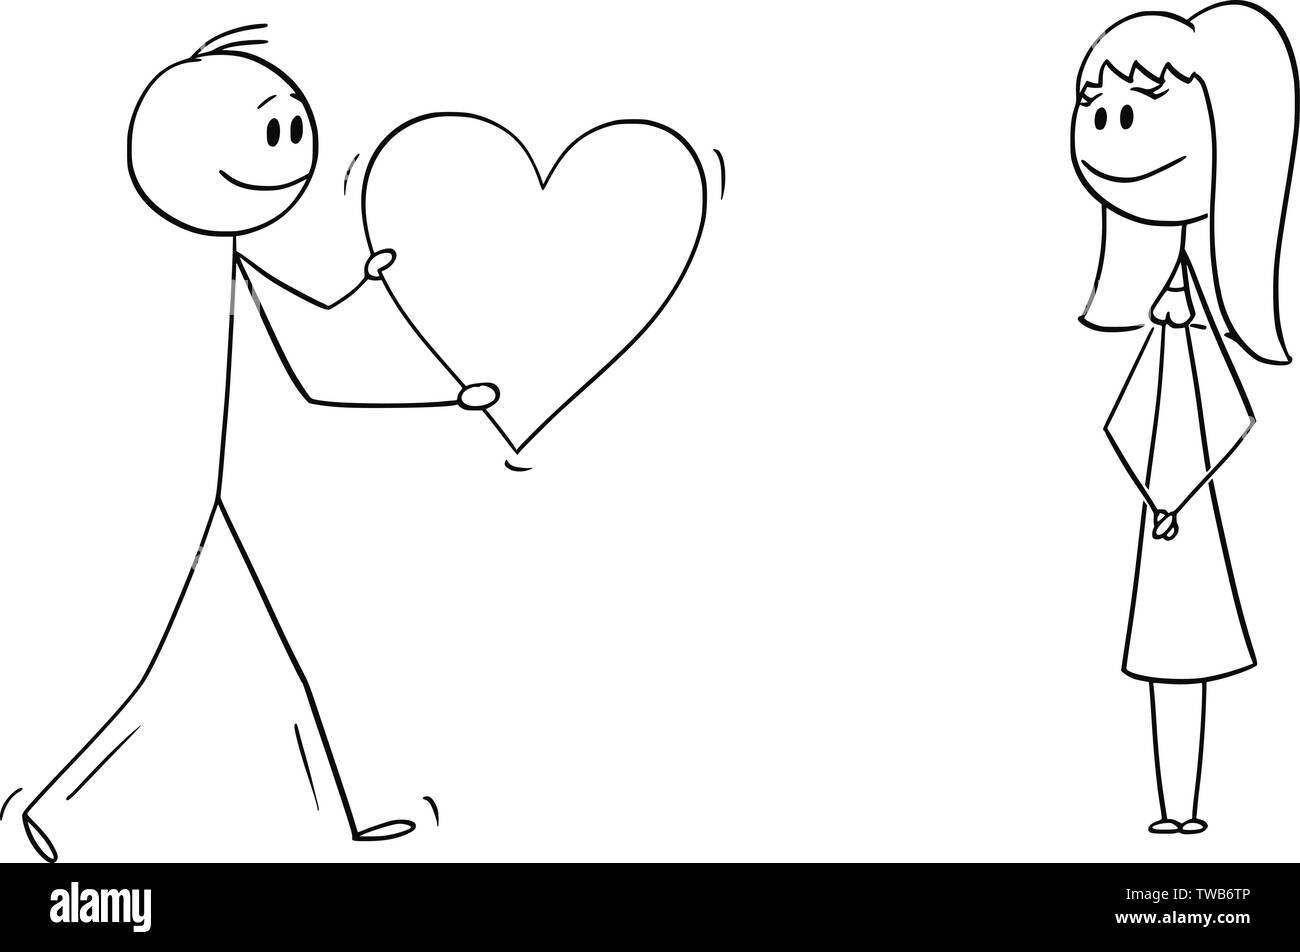 Vektor cartoon Strichmännchen Zeichnen konzeptionelle Darstellung der Mann oder Junge, romantische Herz zum Mädchen oder eine Frau auf dem Moor. Erklärung oder Bekenntnis der Liebe. Stock Vektor